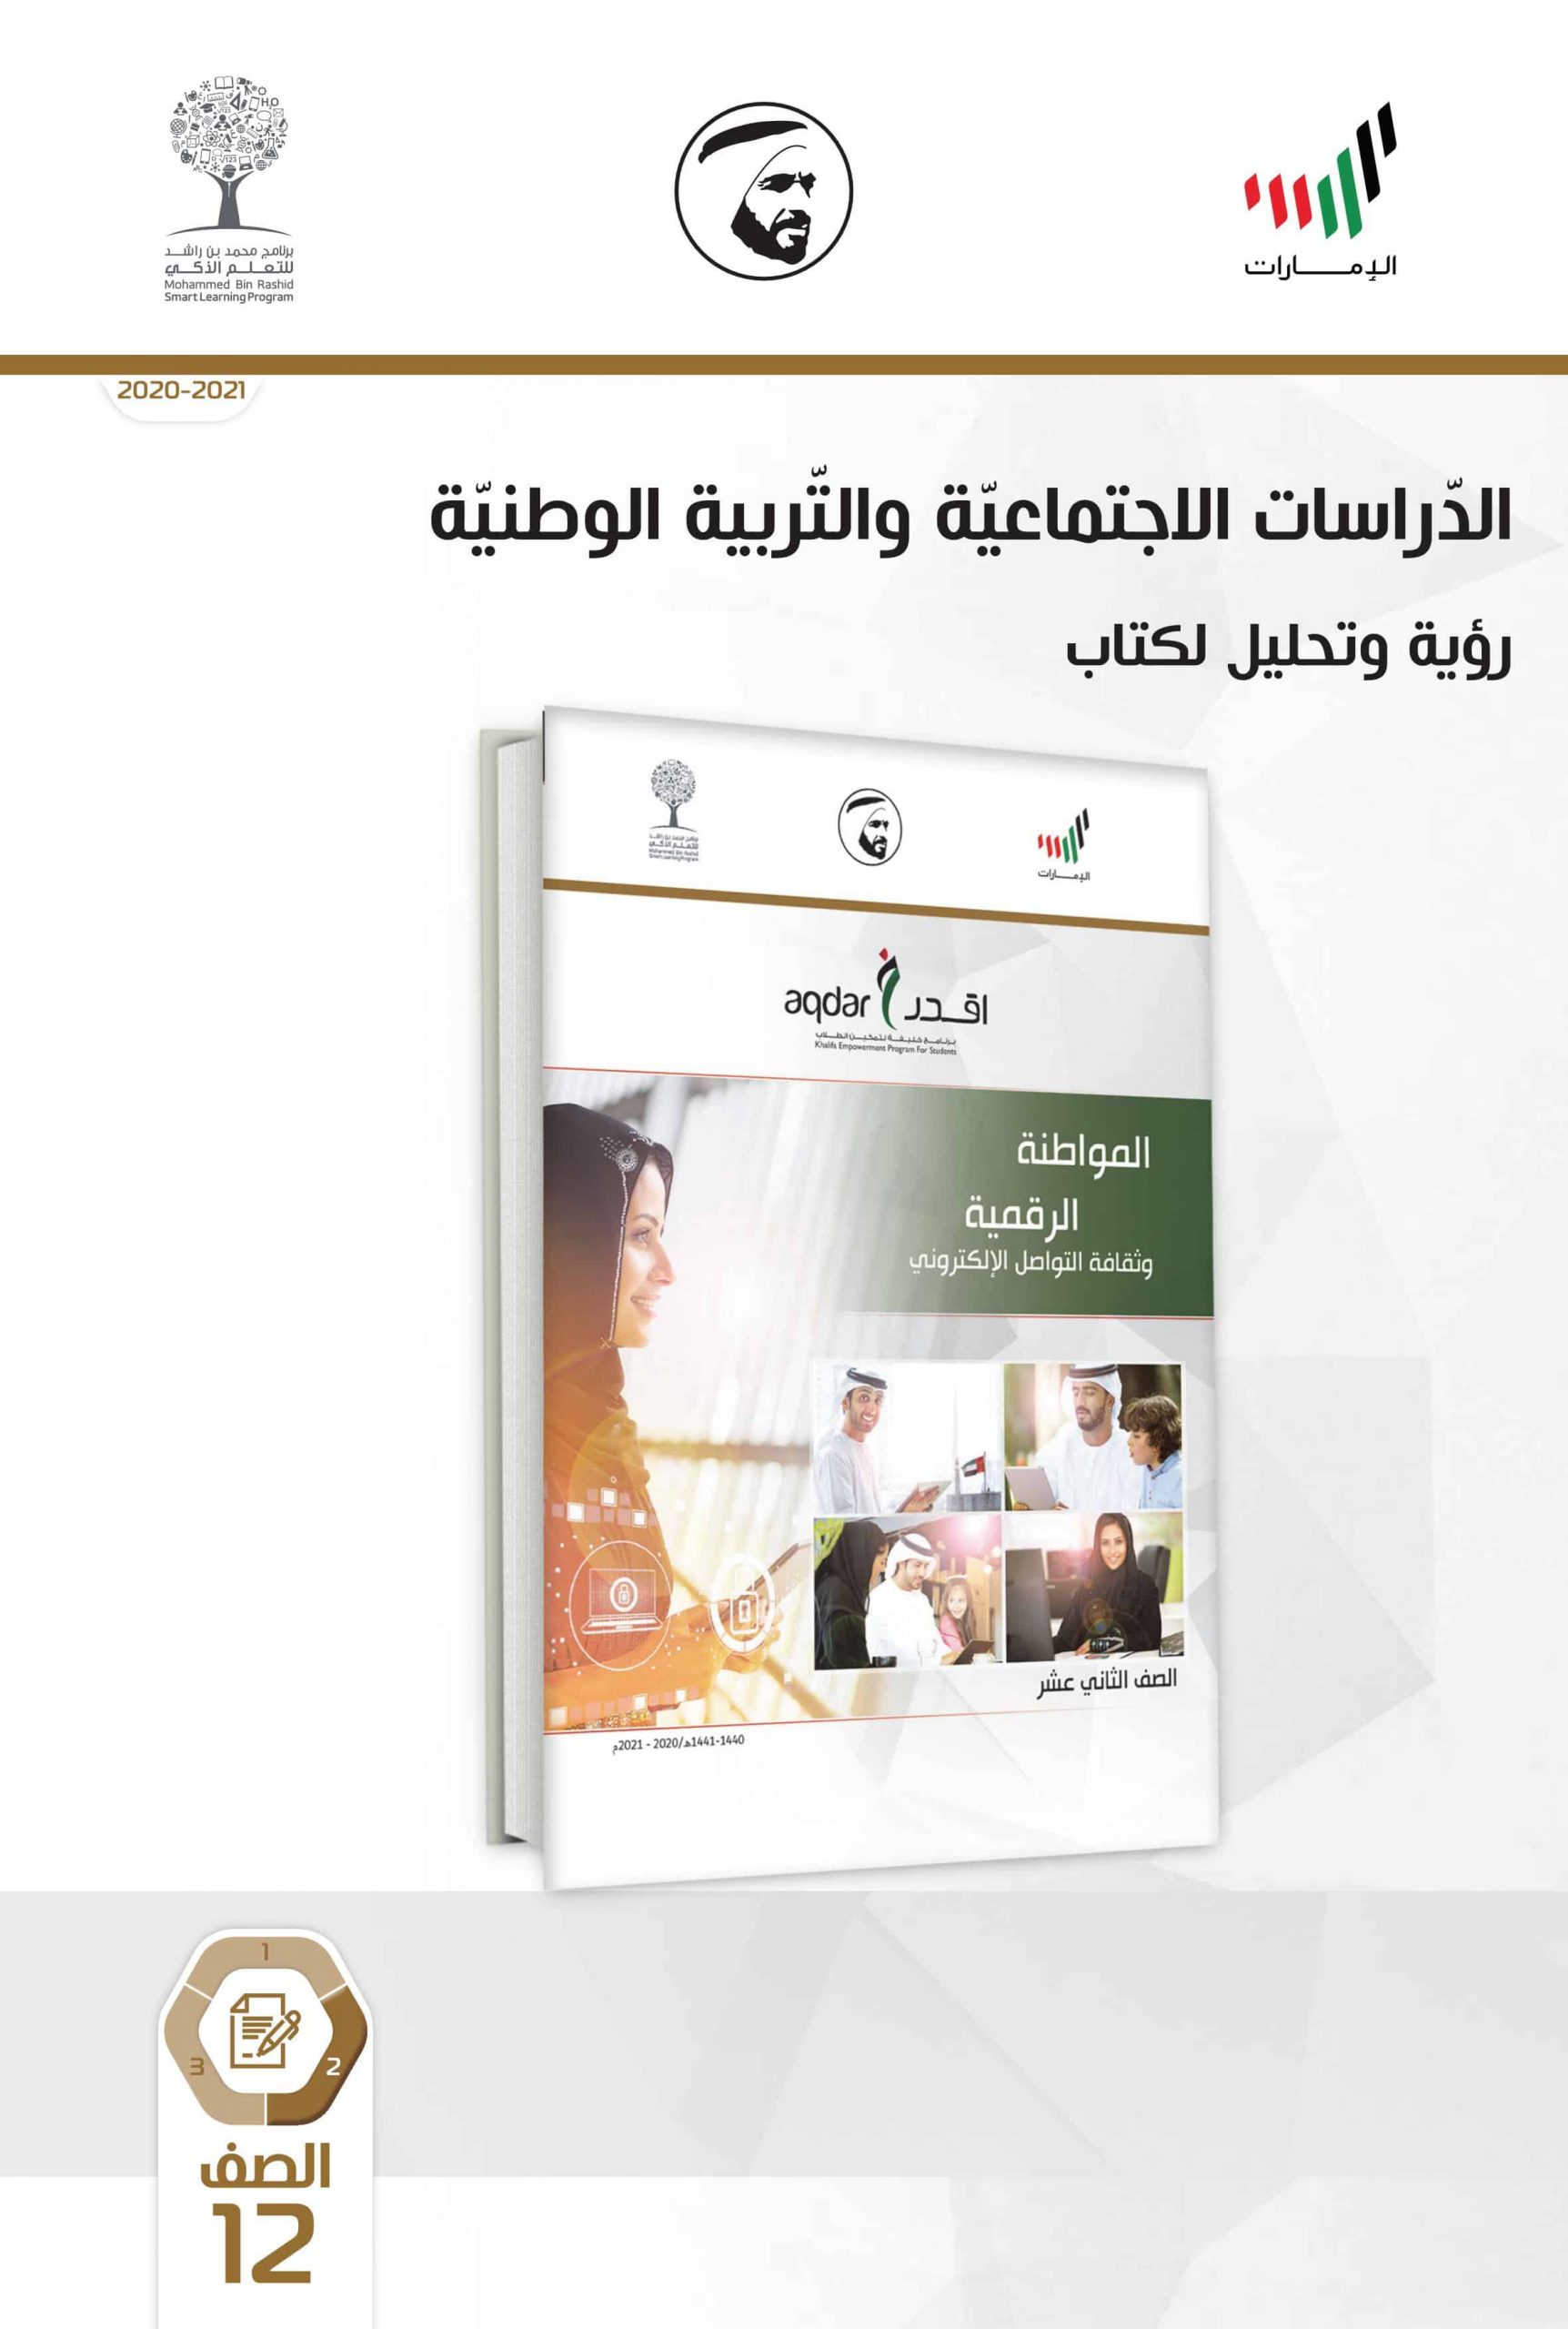 كتاب النشاط للطالب الفصل الدراسي الثاني 2020-2021 الصف الثاني عشر مادة الدراسات الاجتماعية والتربية الوطنية